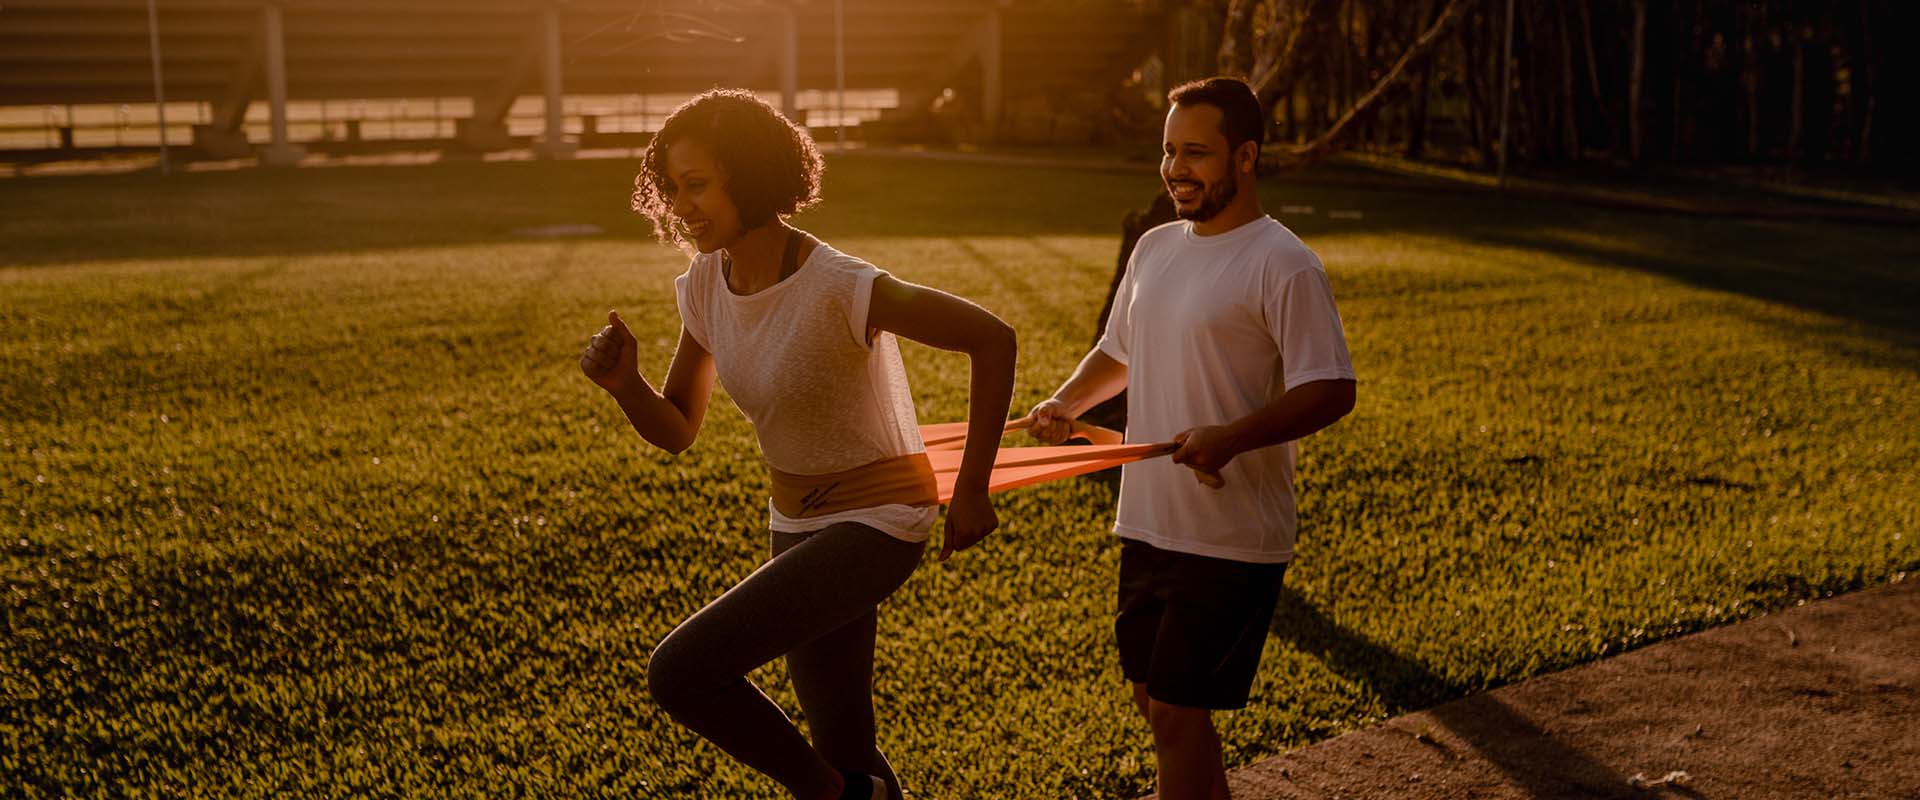 Exercício em casa: saiba os benefícios de usar a faixa elástica